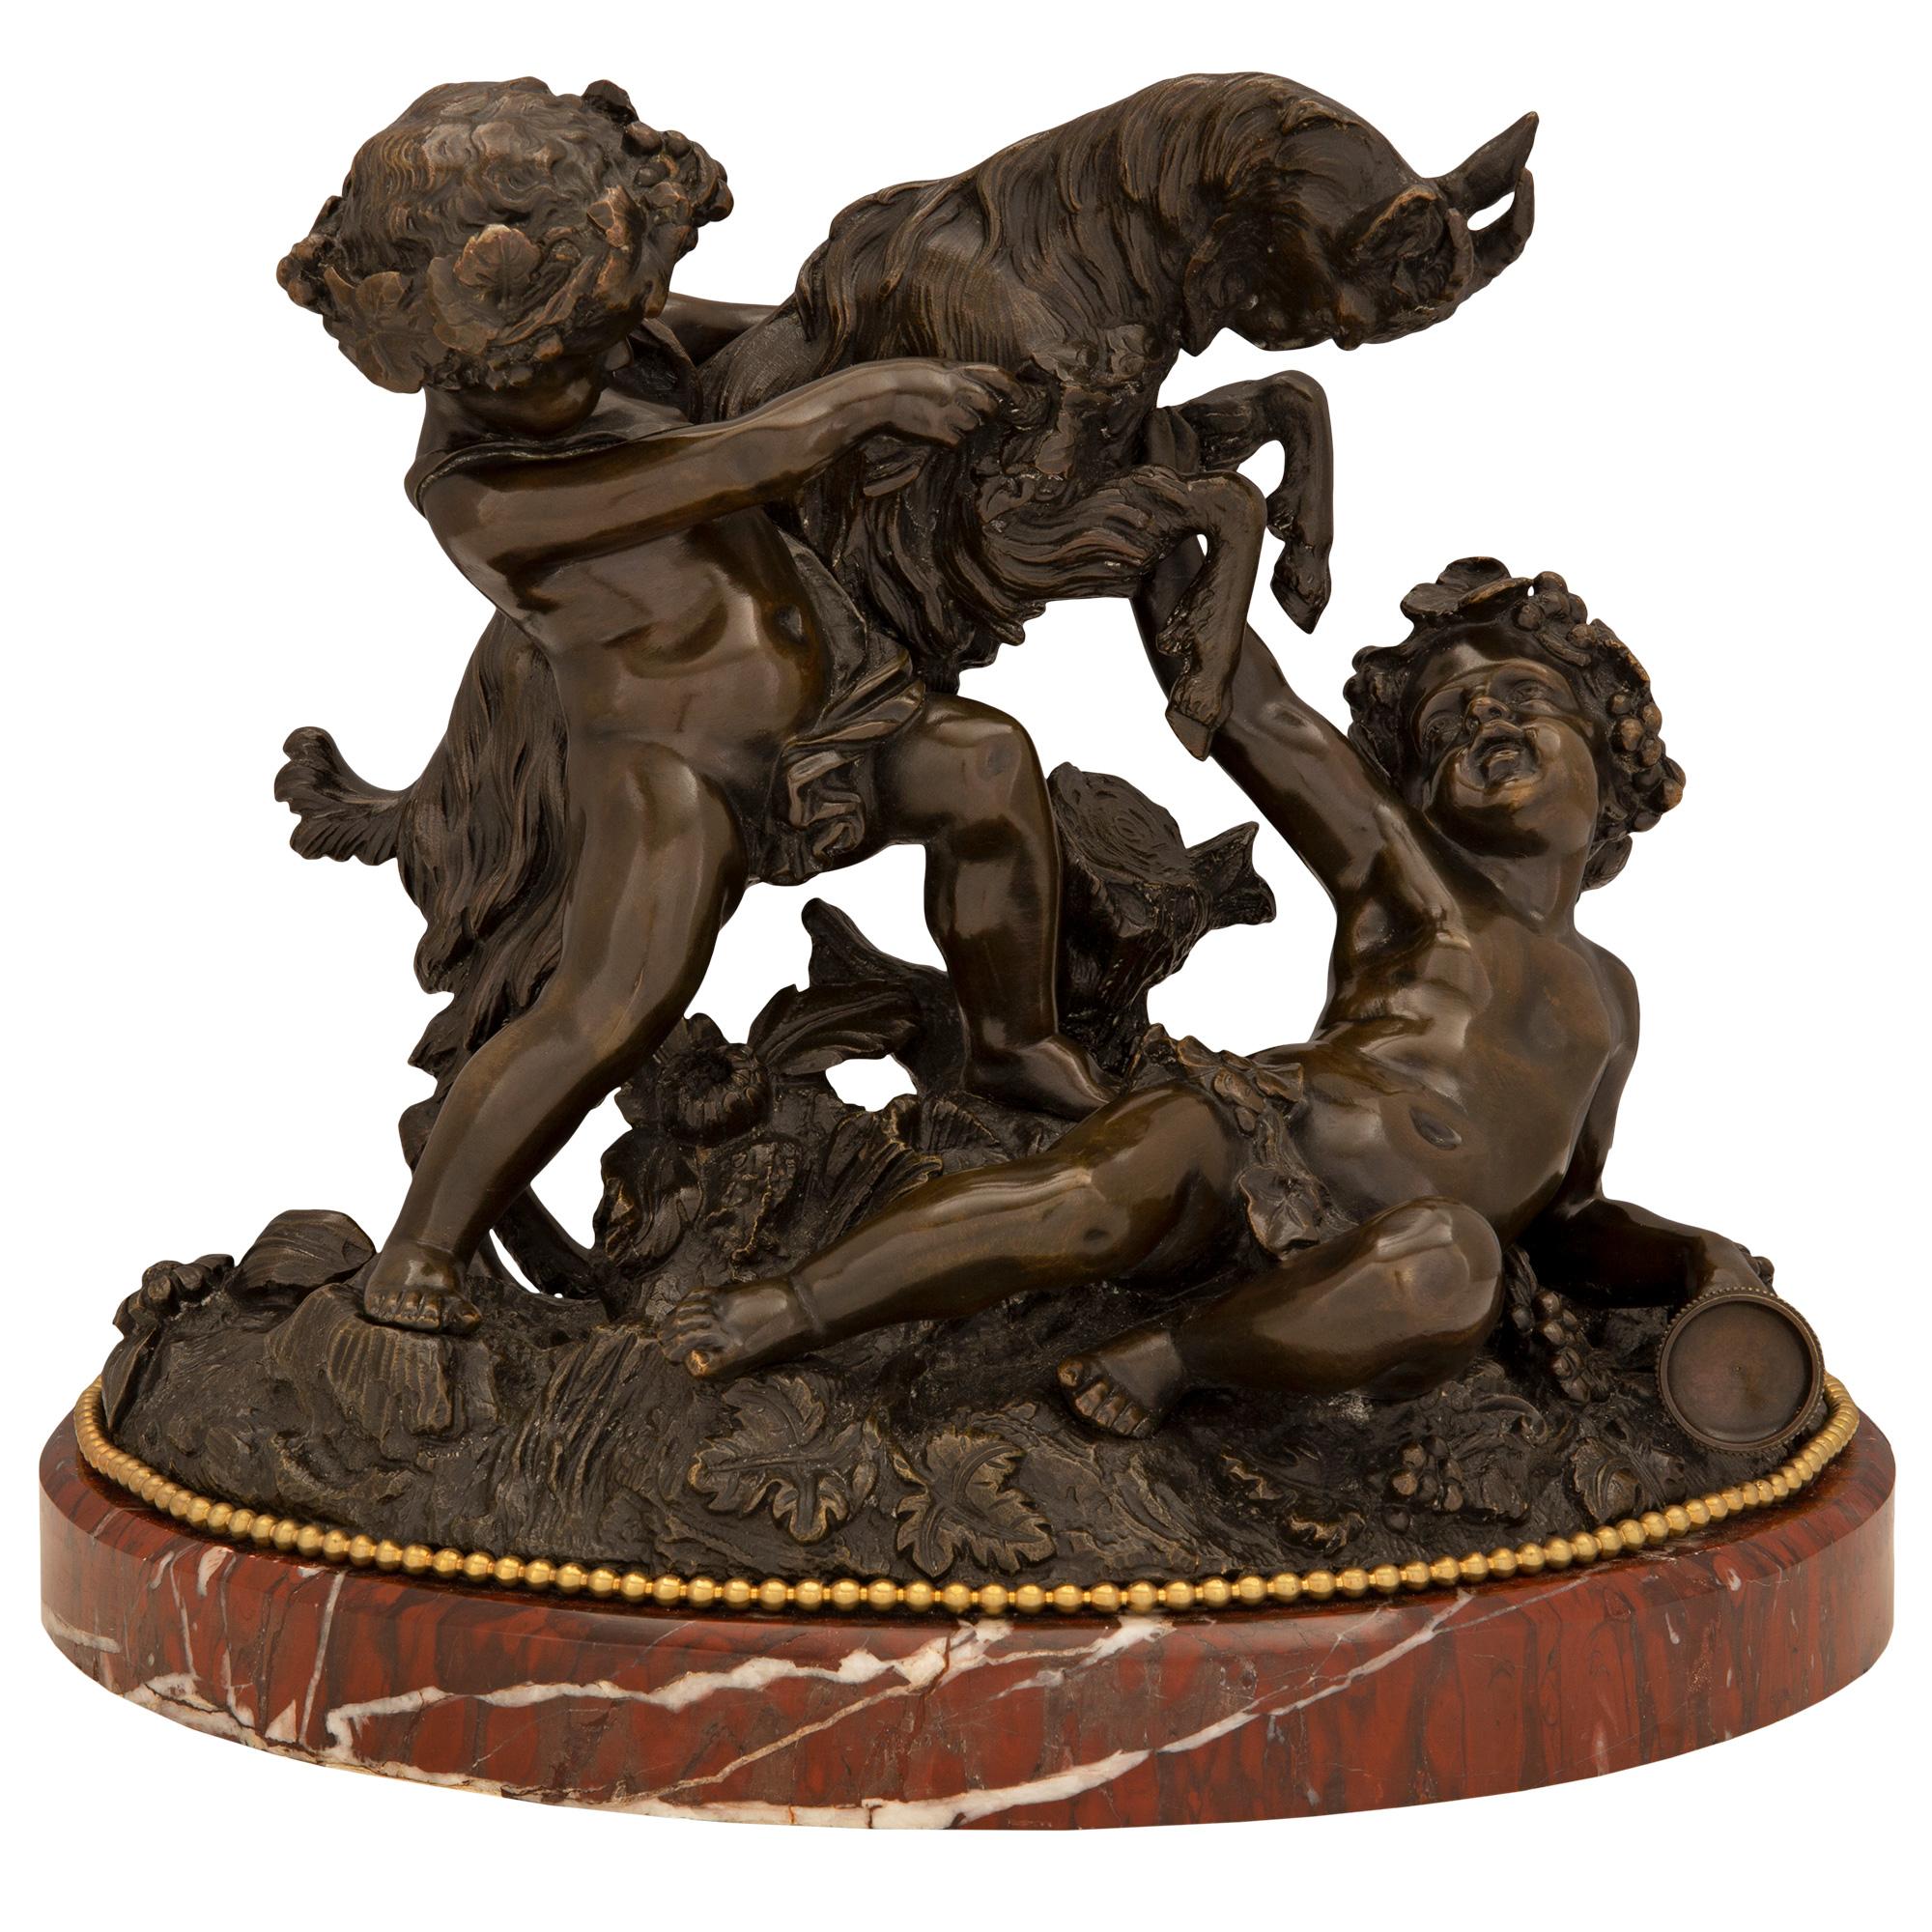 Patinierte Bronze-, Goldbronze- und Marmorstatue, Louis-XVI-Stil, 19. Jahrhundert